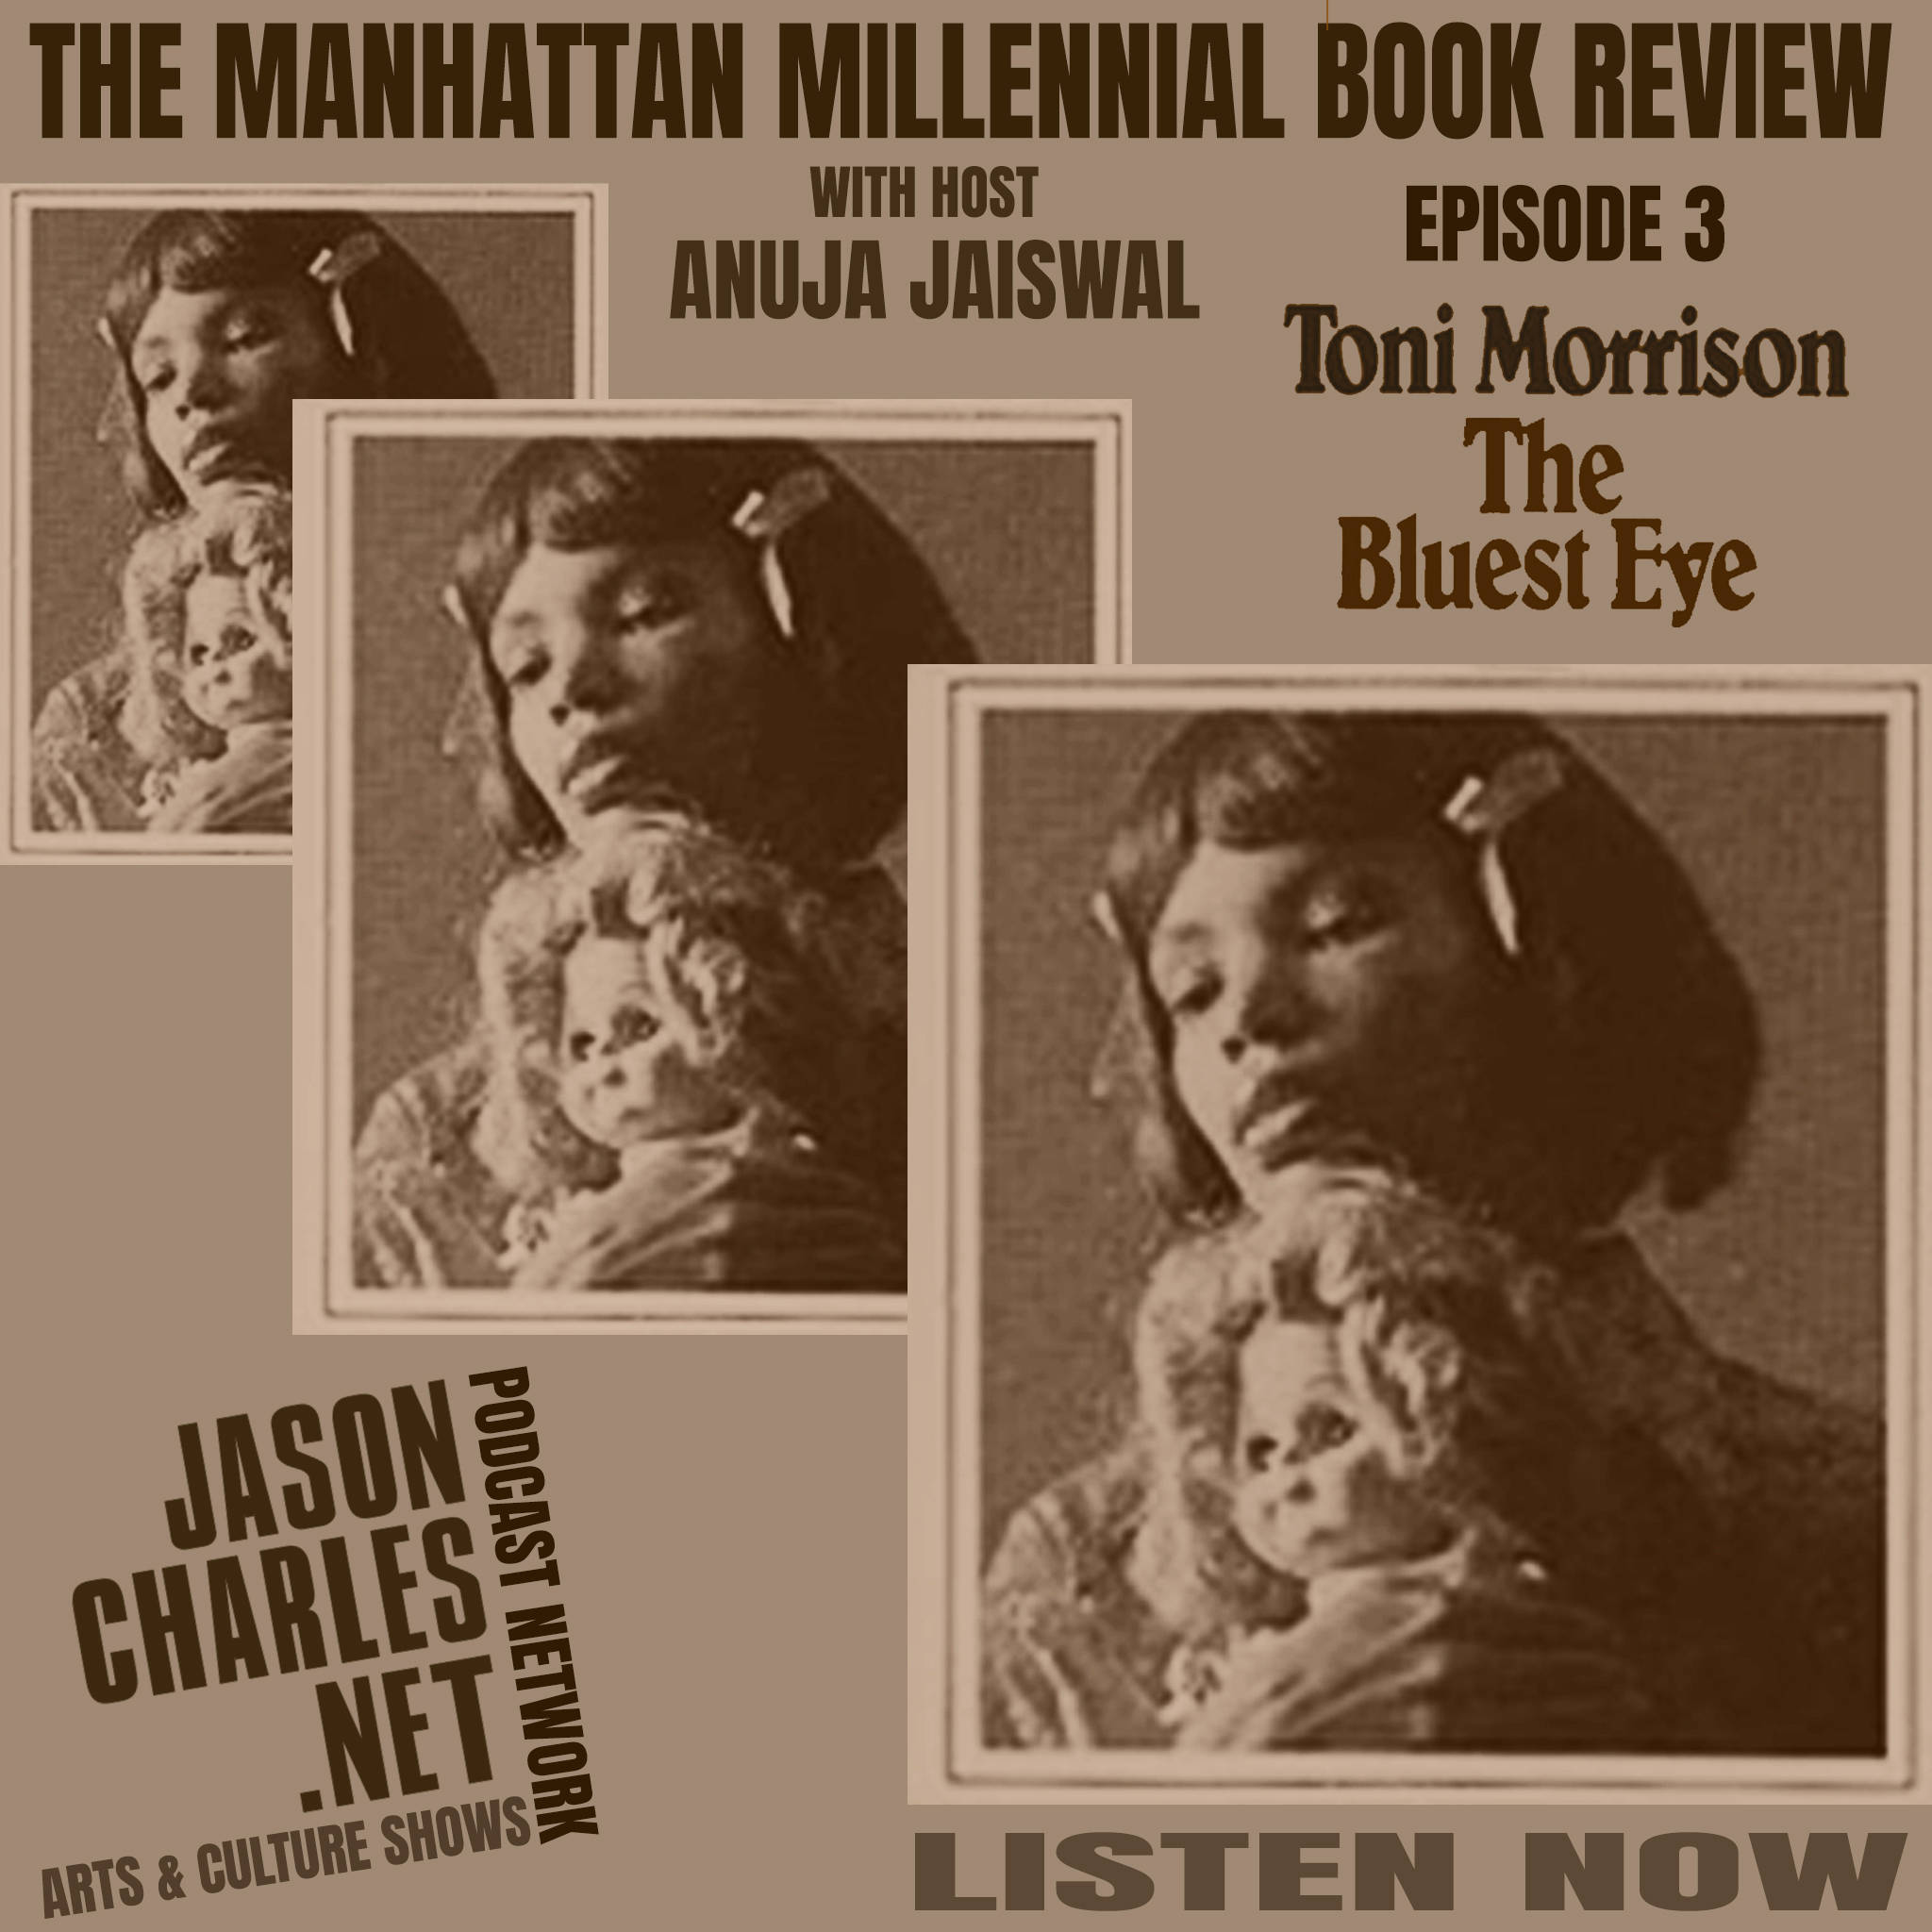 THE MANHATTAN MILLENNIAL BOOK REVIEW Episode 3 The Bluest Eye